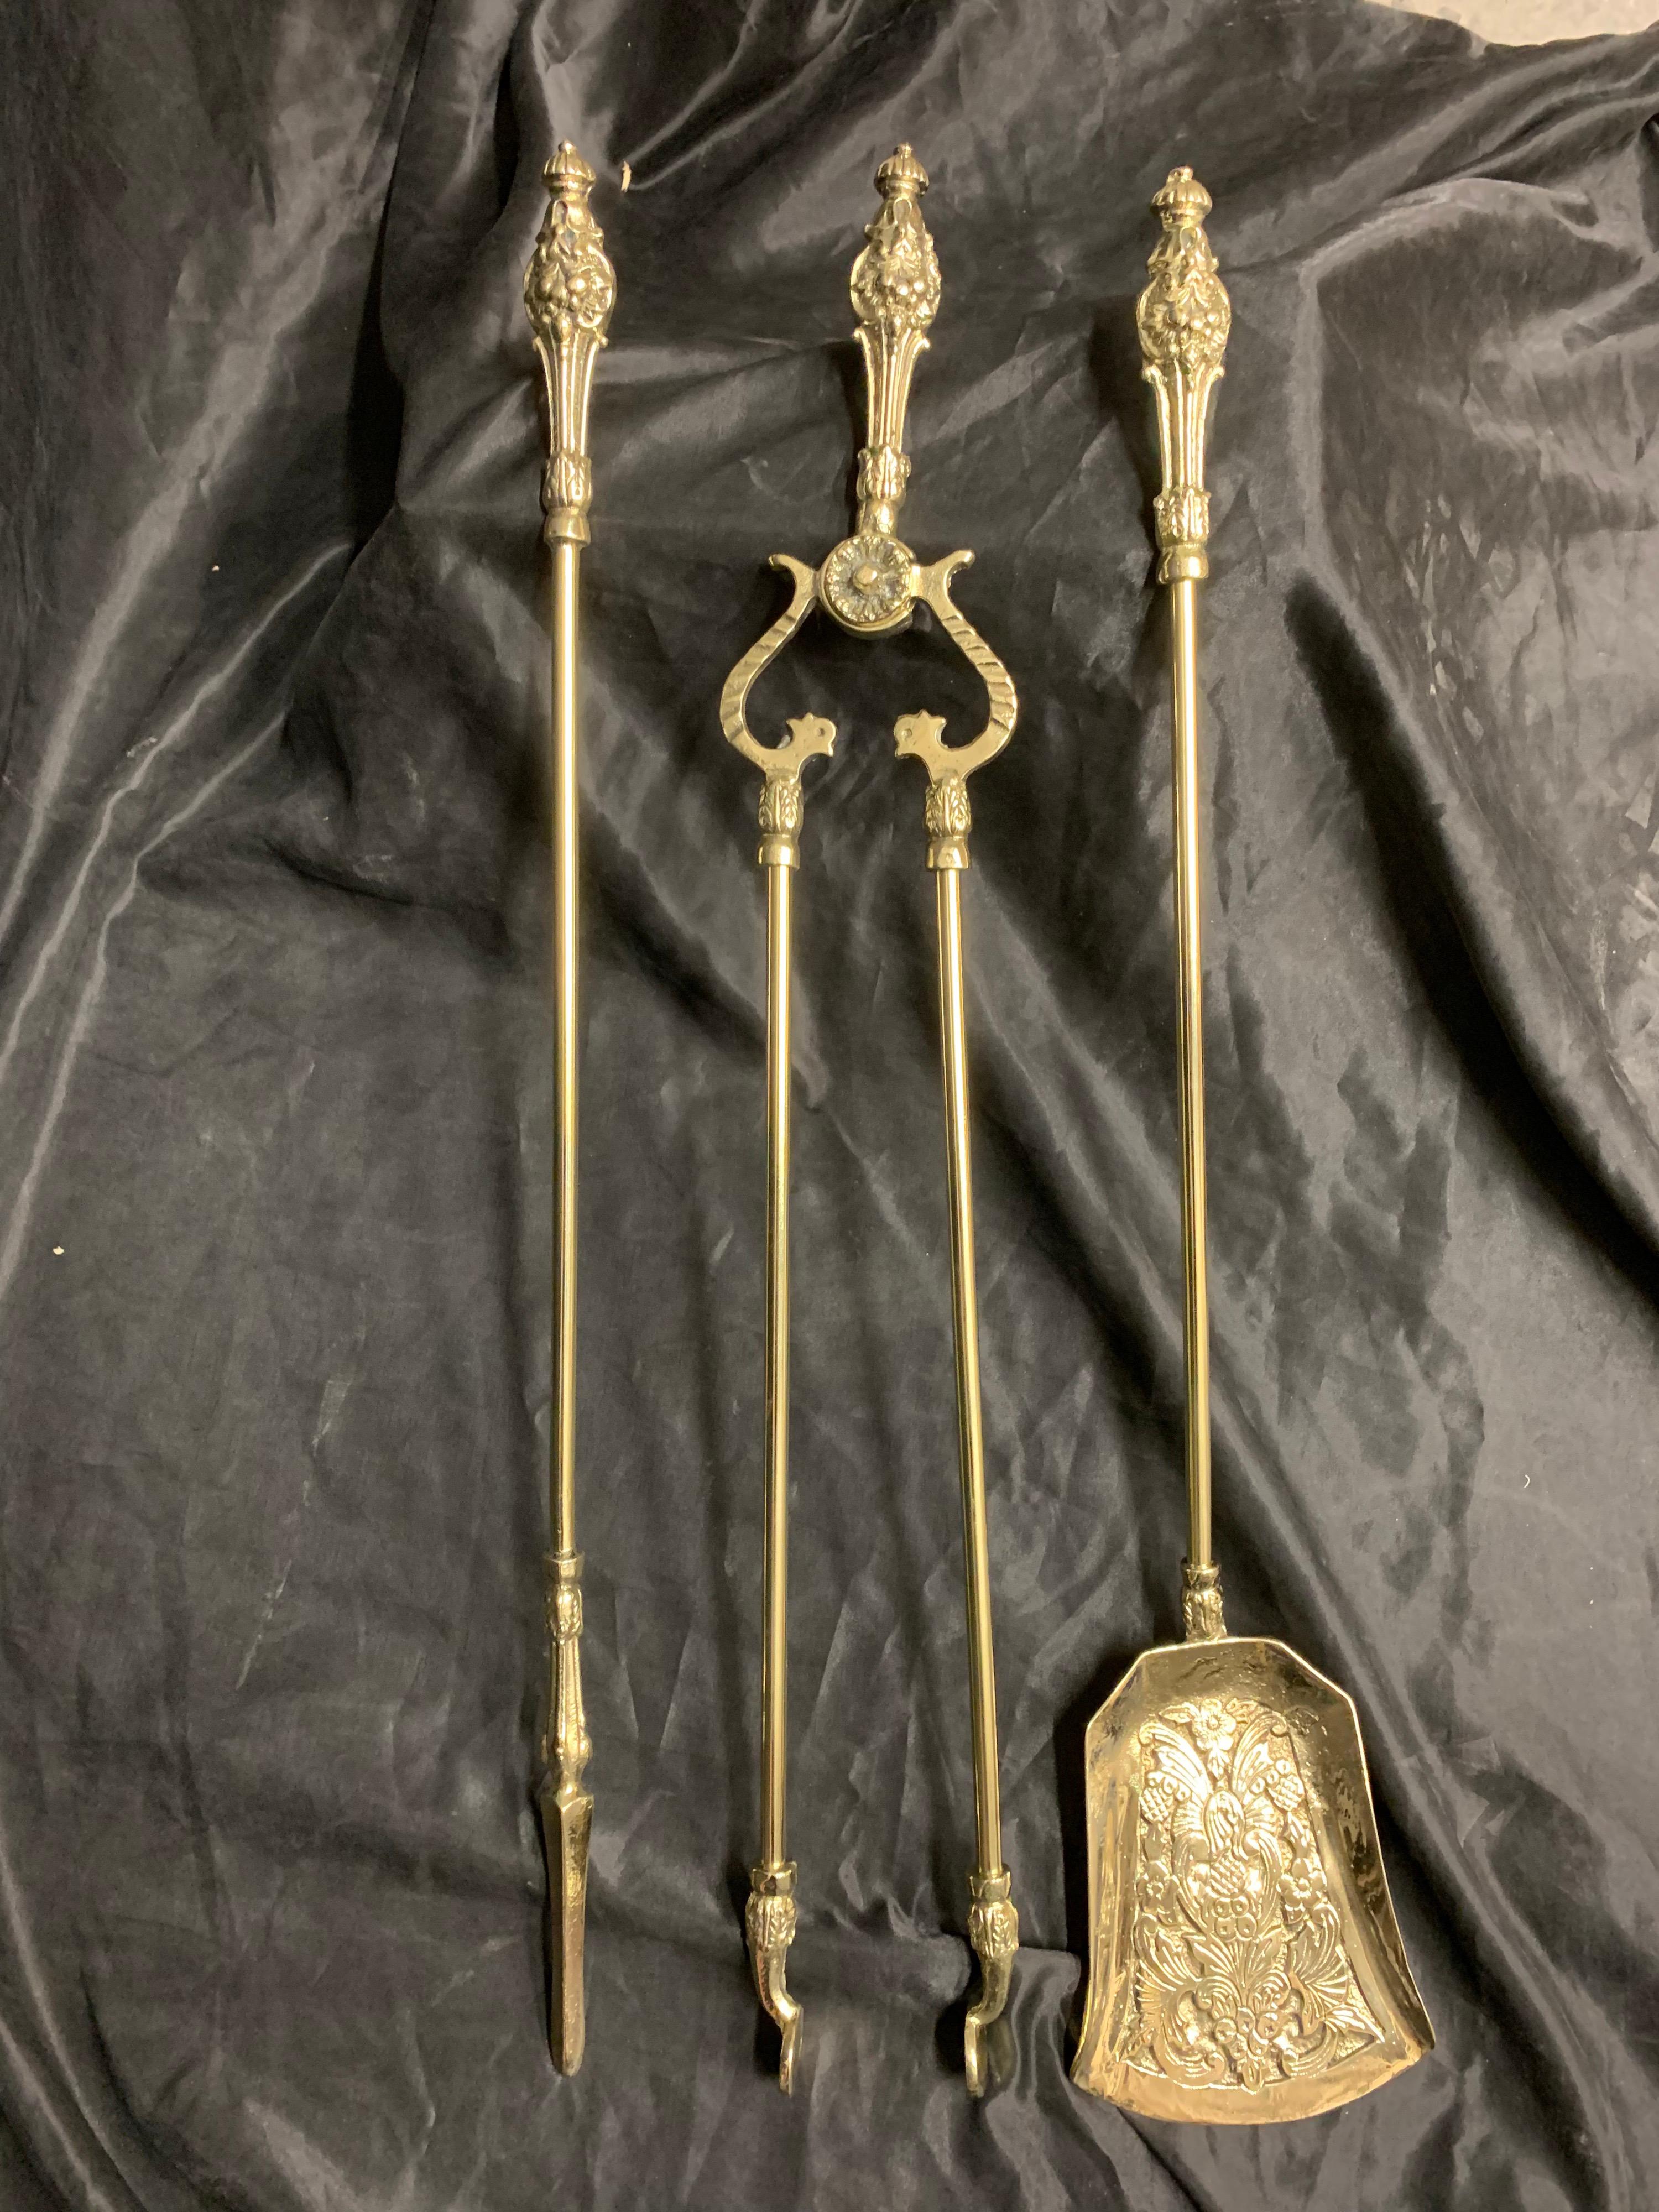 Un ensemble de trois outils de fer à repasser en laiton poli du 19ème siècle, composé d'un tisonnier, d'une pelle moulée décorative, et d'une paire de pinces avec une poignée de style serpent, chacune avec une poignée ornée classiquement moulée avec